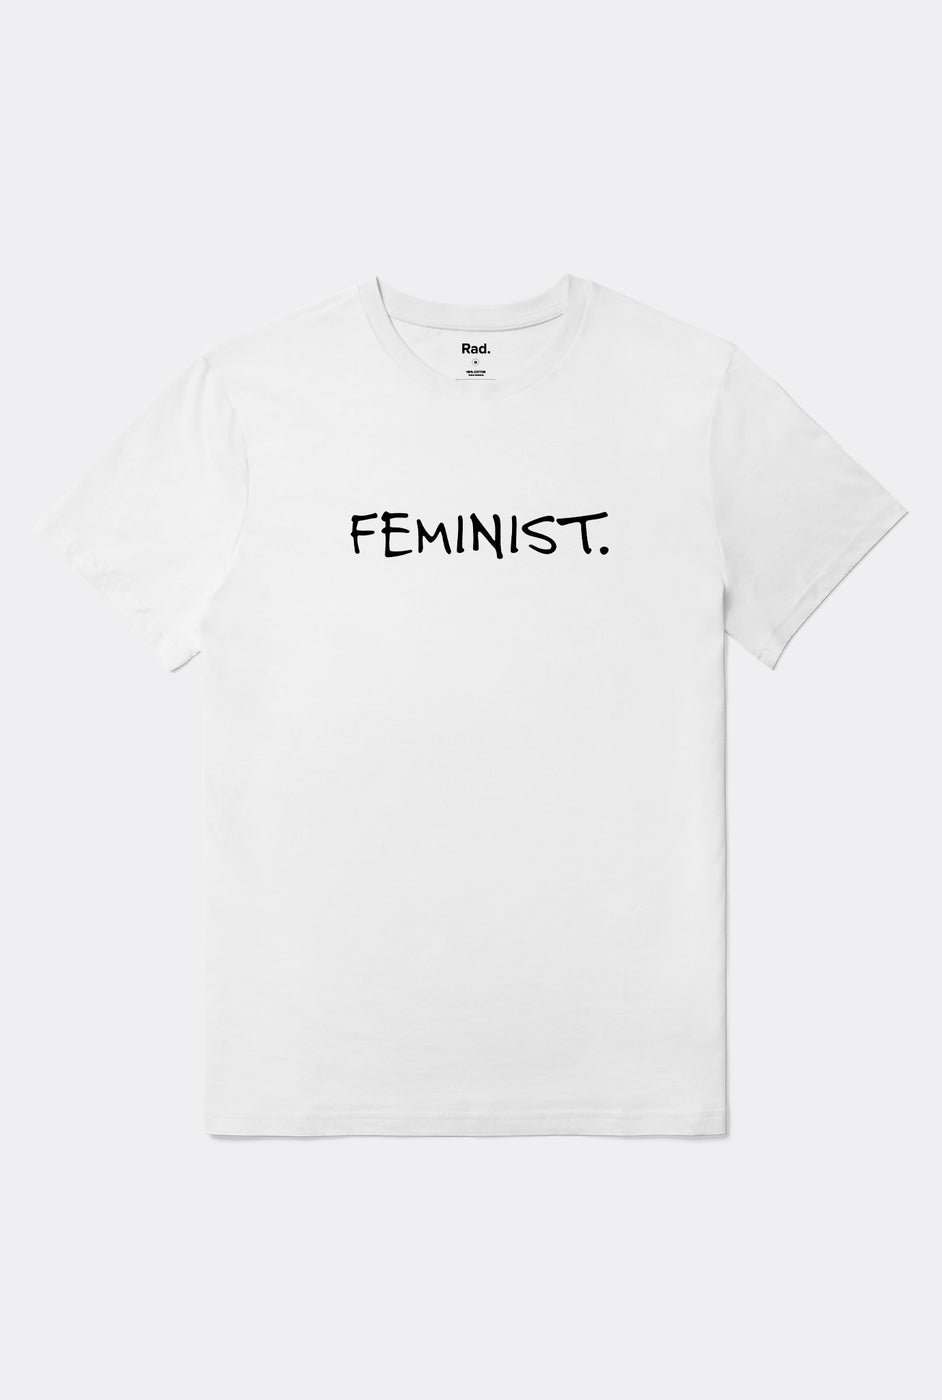 T-Shirt S/S Feminist